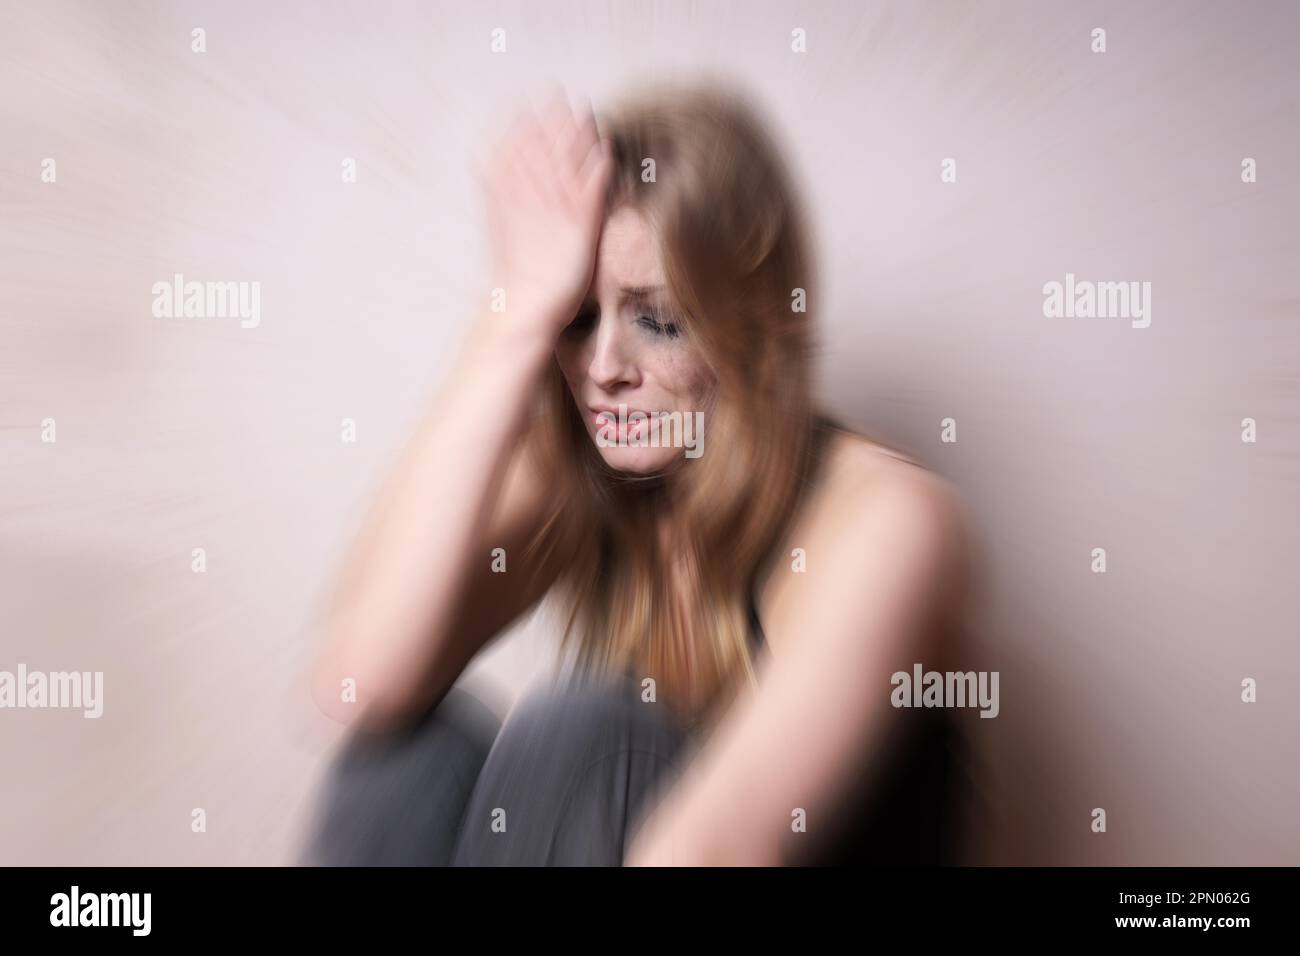 Traurige junge Frau mit tränenbeflecktem Gesicht, die weint. Depressionskonzept. Mit Zoomeffekt Stockfoto